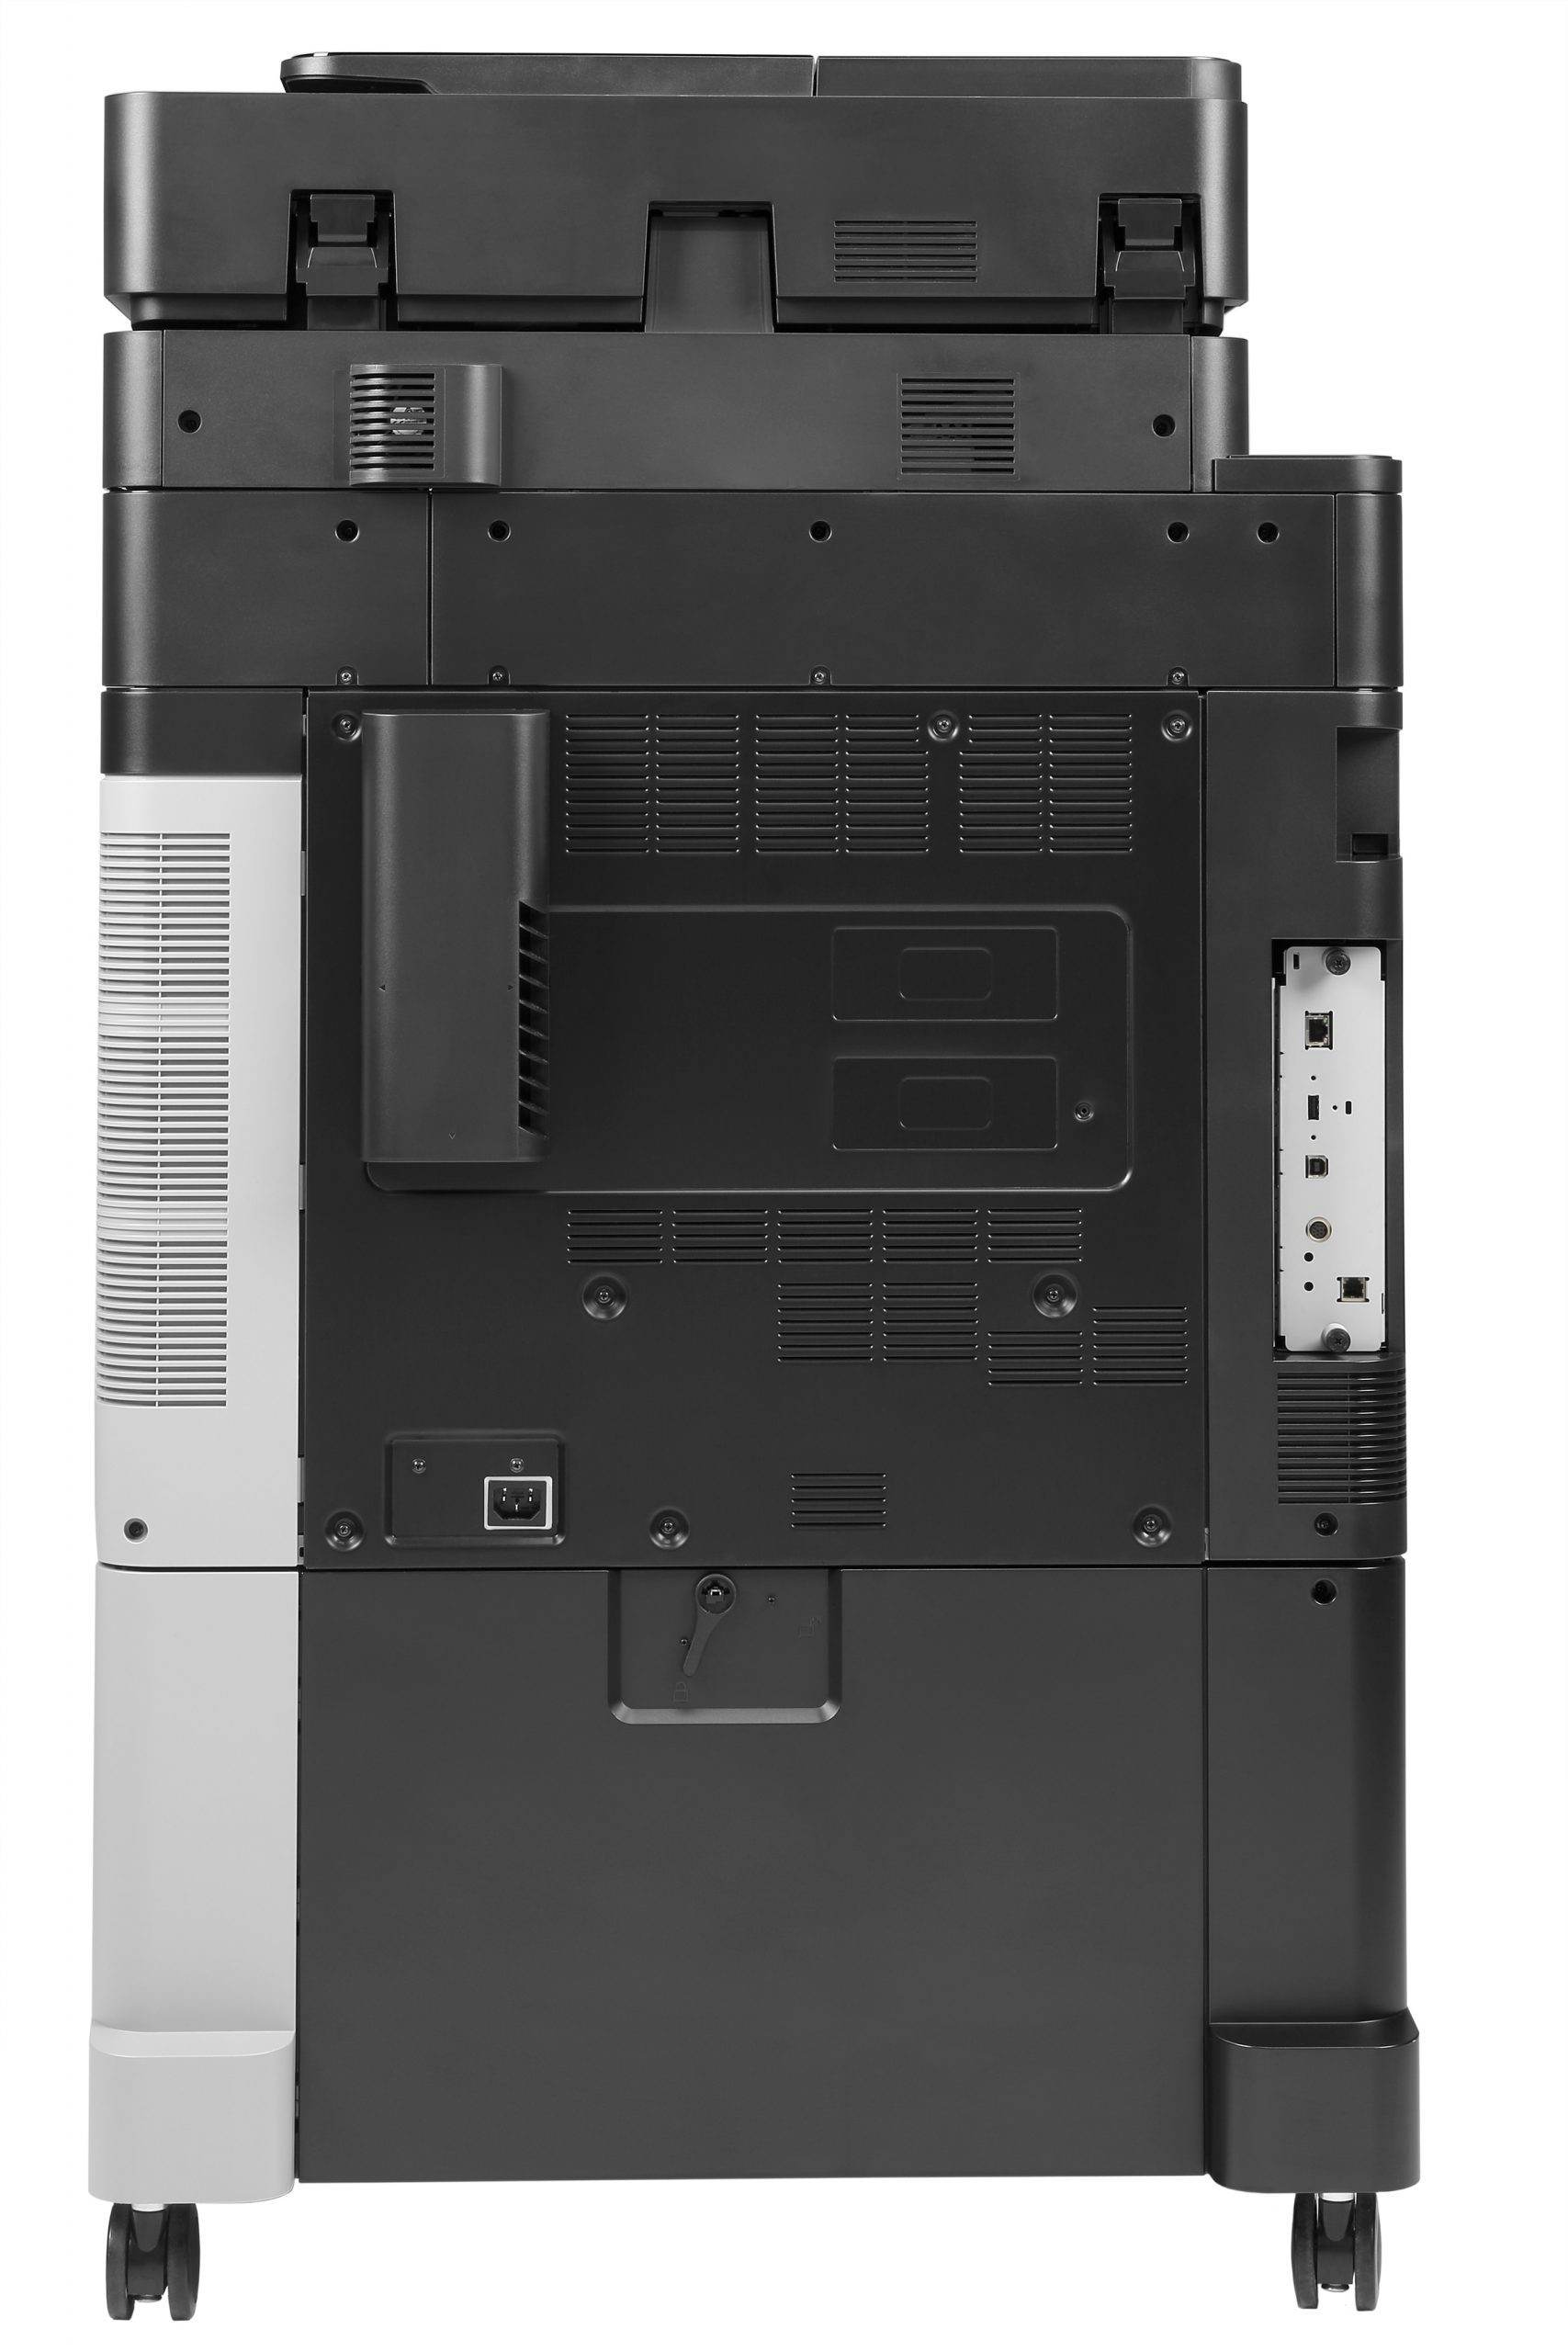 HP LaserJet Enterprise flow M880z A3 color laser multifunction 1200x1200 DPI Duplex Automatic duplex 46ppm Network